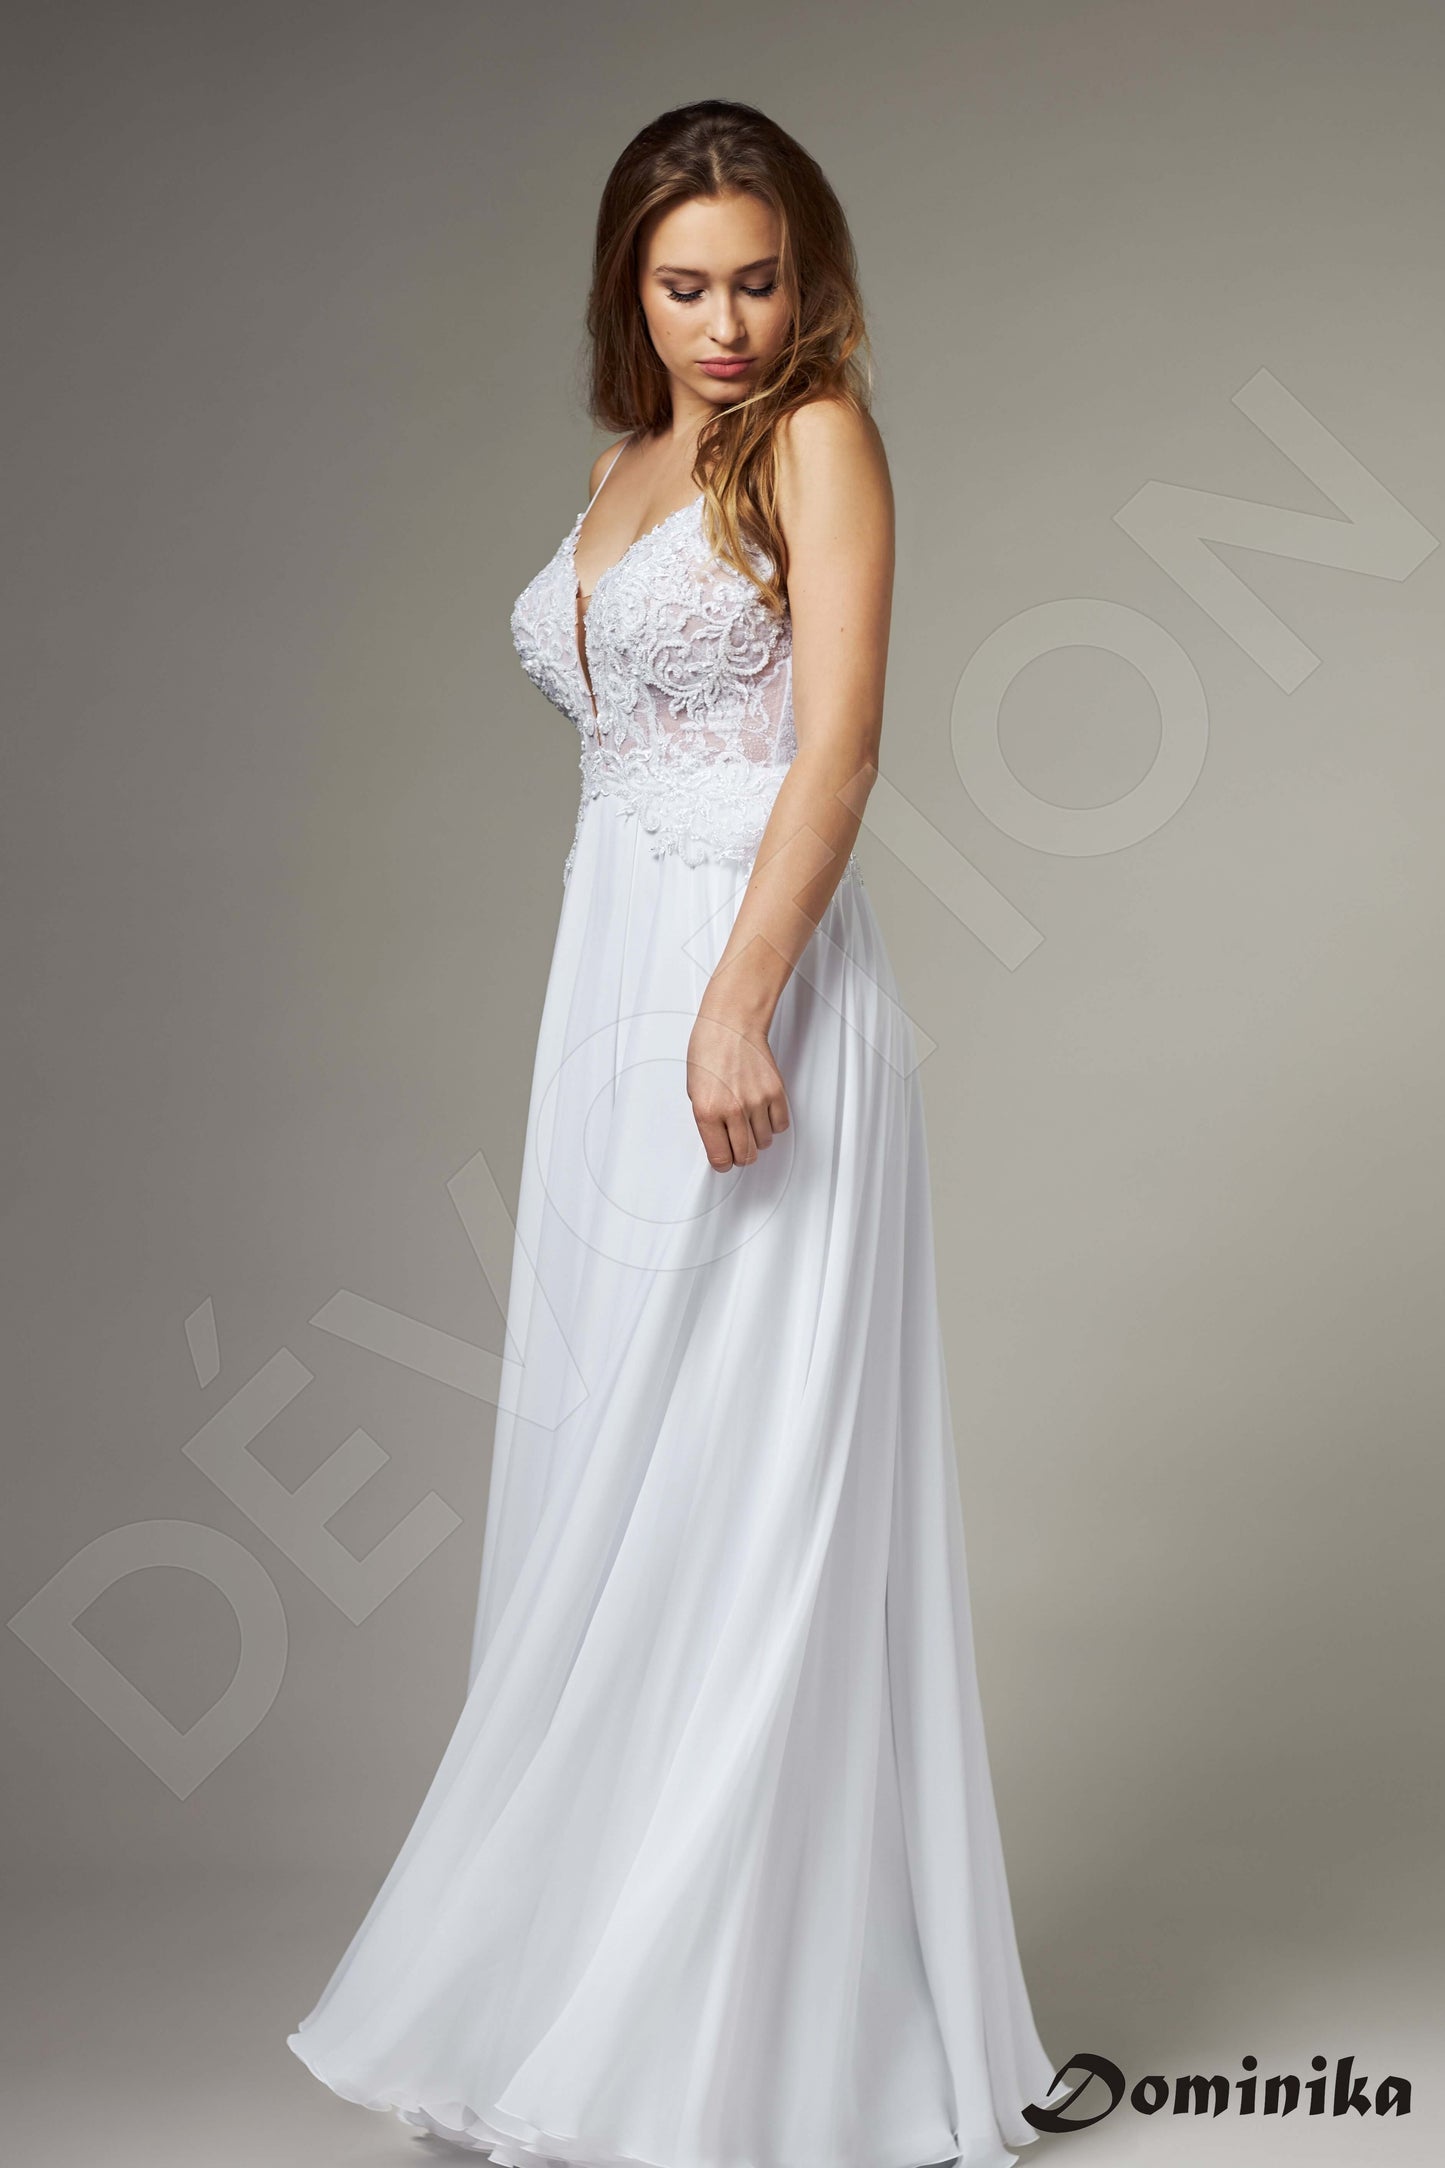 Bellerose Full back A-line Straps Wedding Dress Front